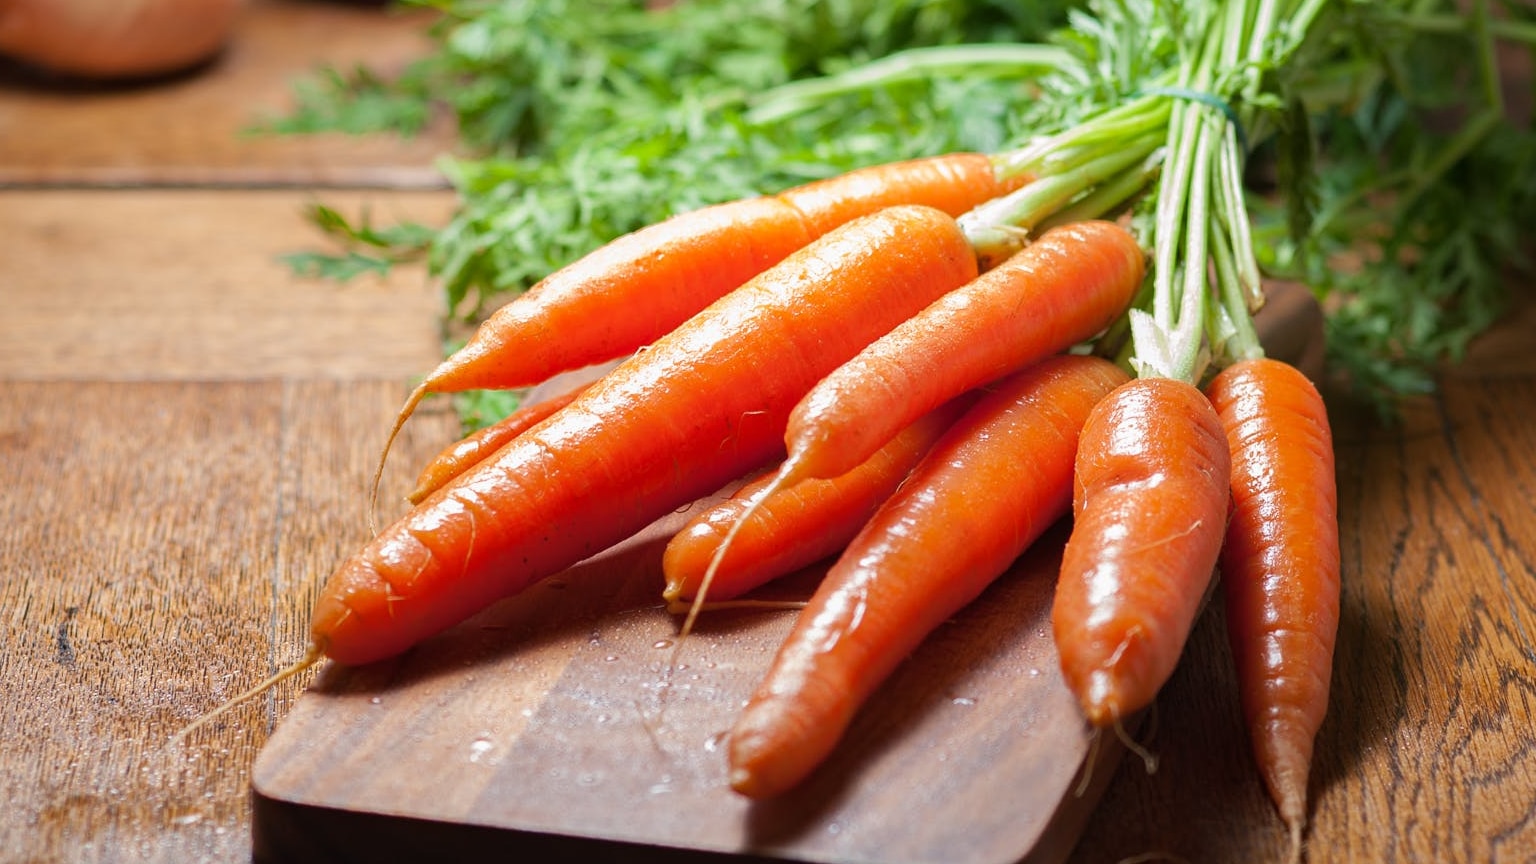 Benefits of having carrots in winter